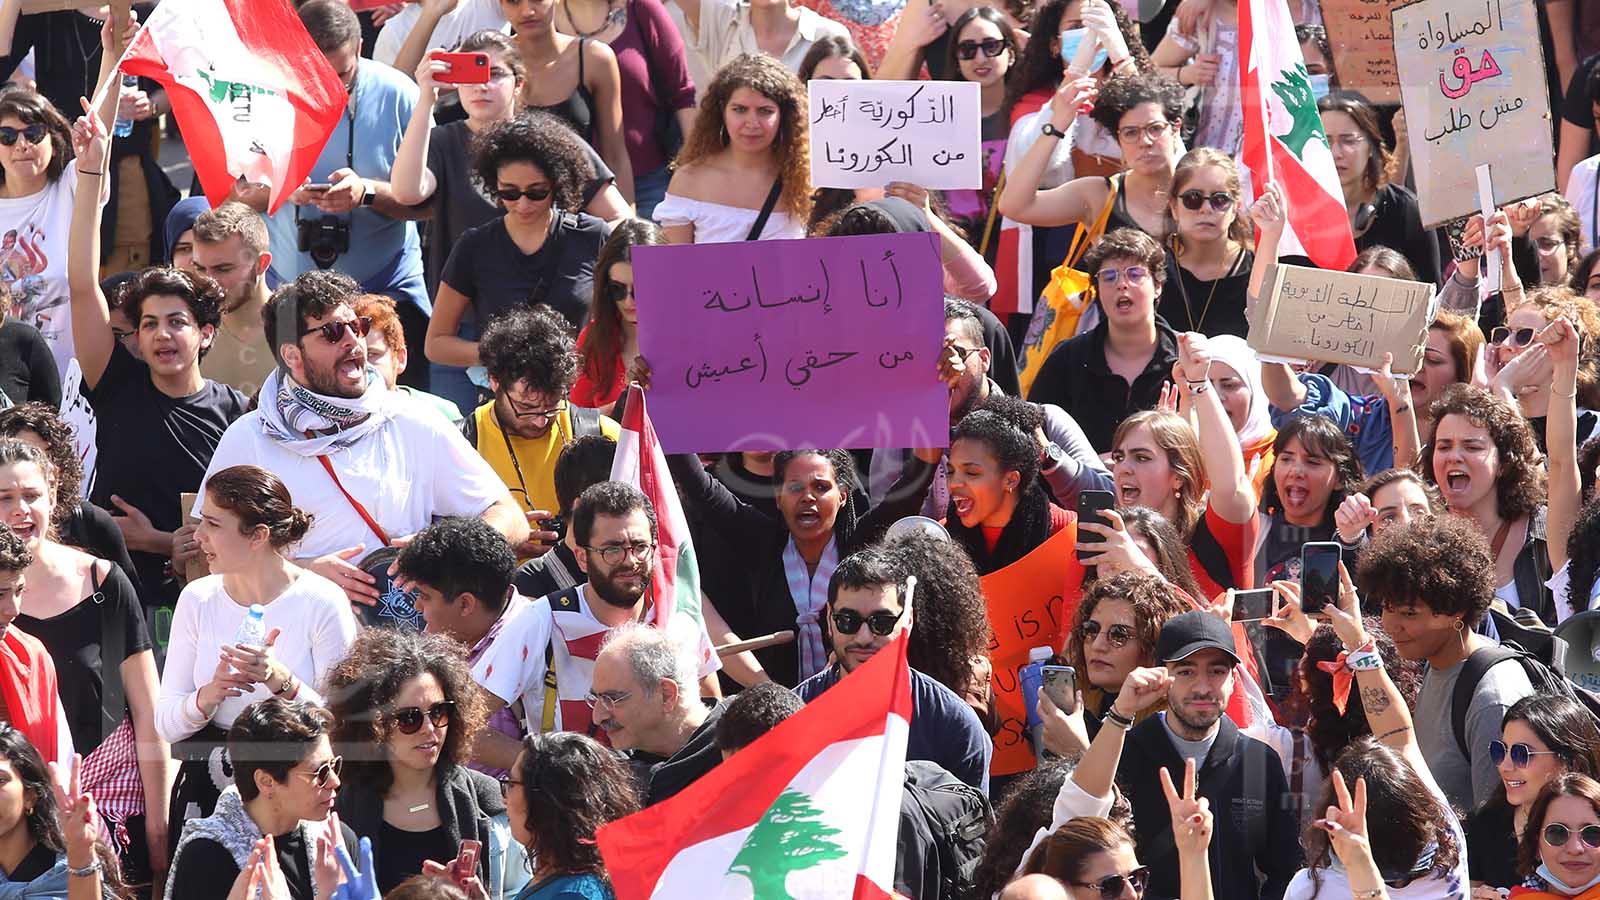 النساء في بيروت يهتفن "النظام الأبوي أخطر من كورونا"